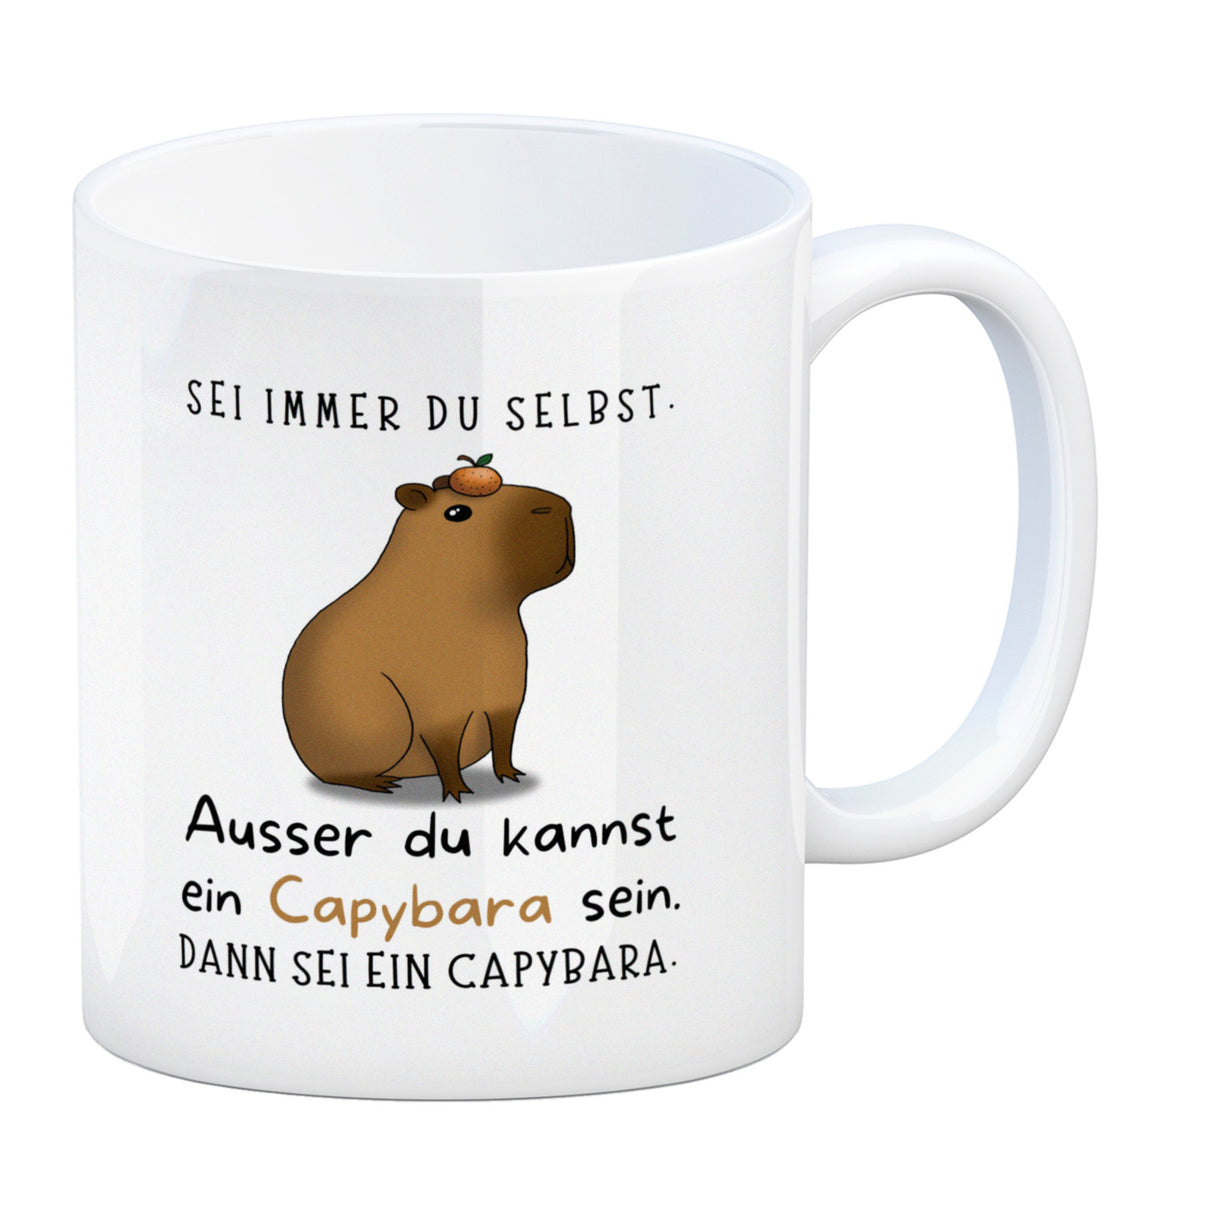 Kaufen Sie jetzt den Capybara Kaffeebecher - Sei immer du selbst